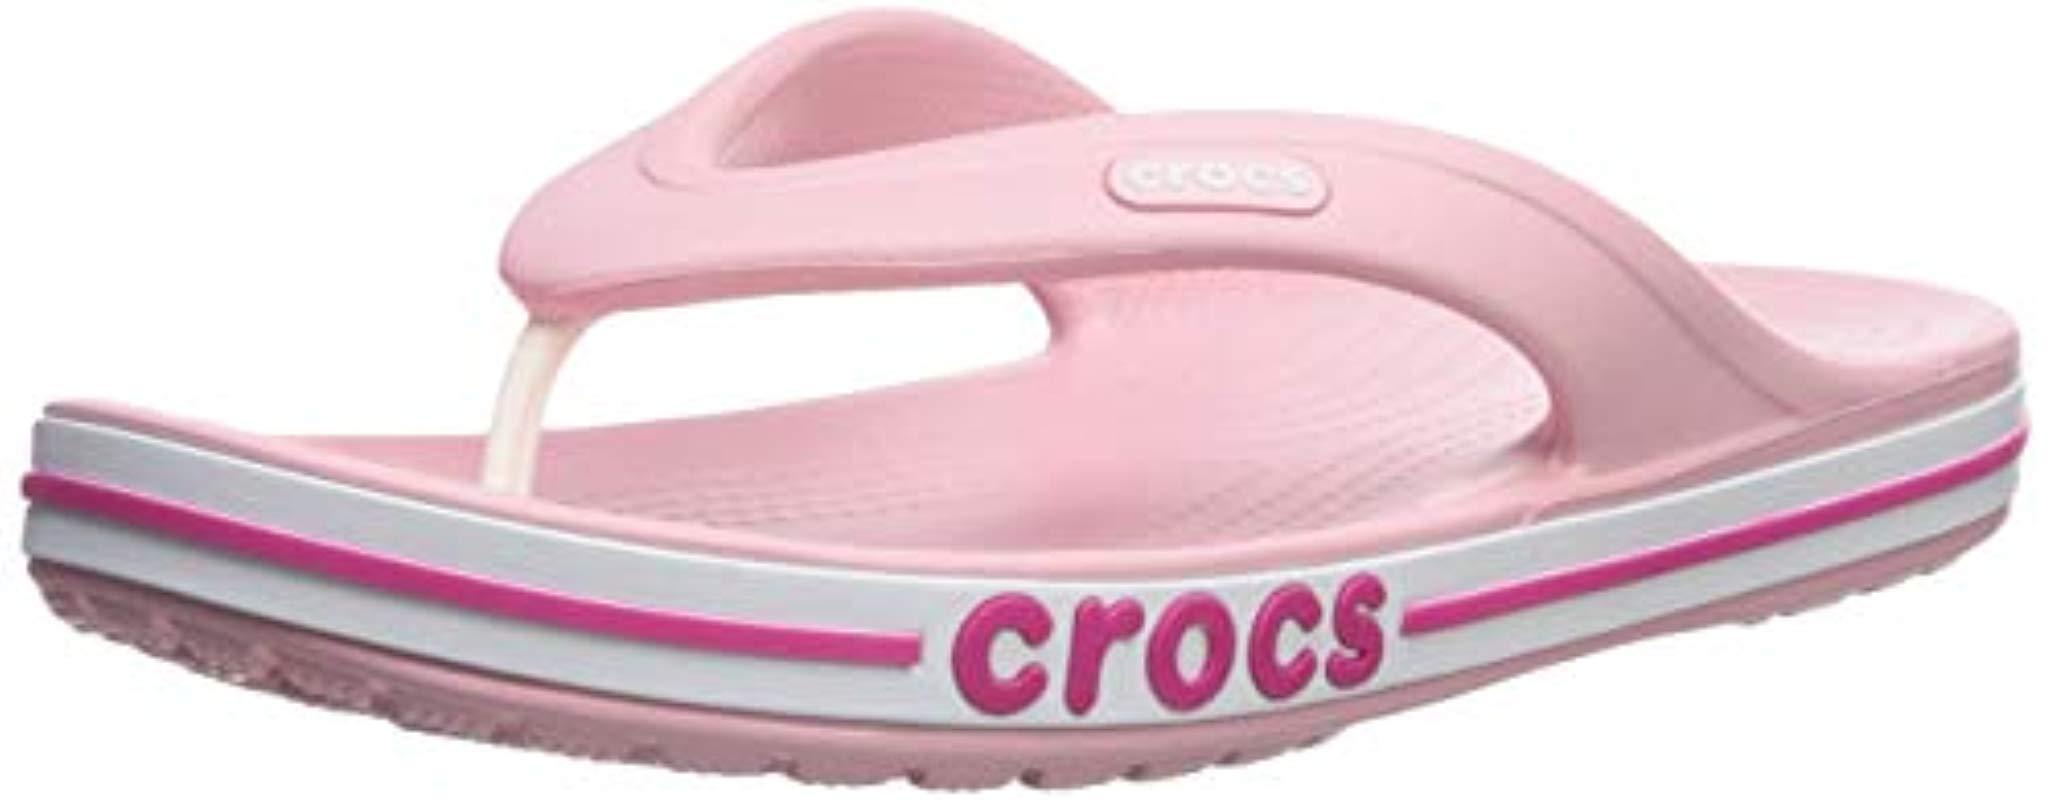 Crocs Unisex Baya Flip Flop